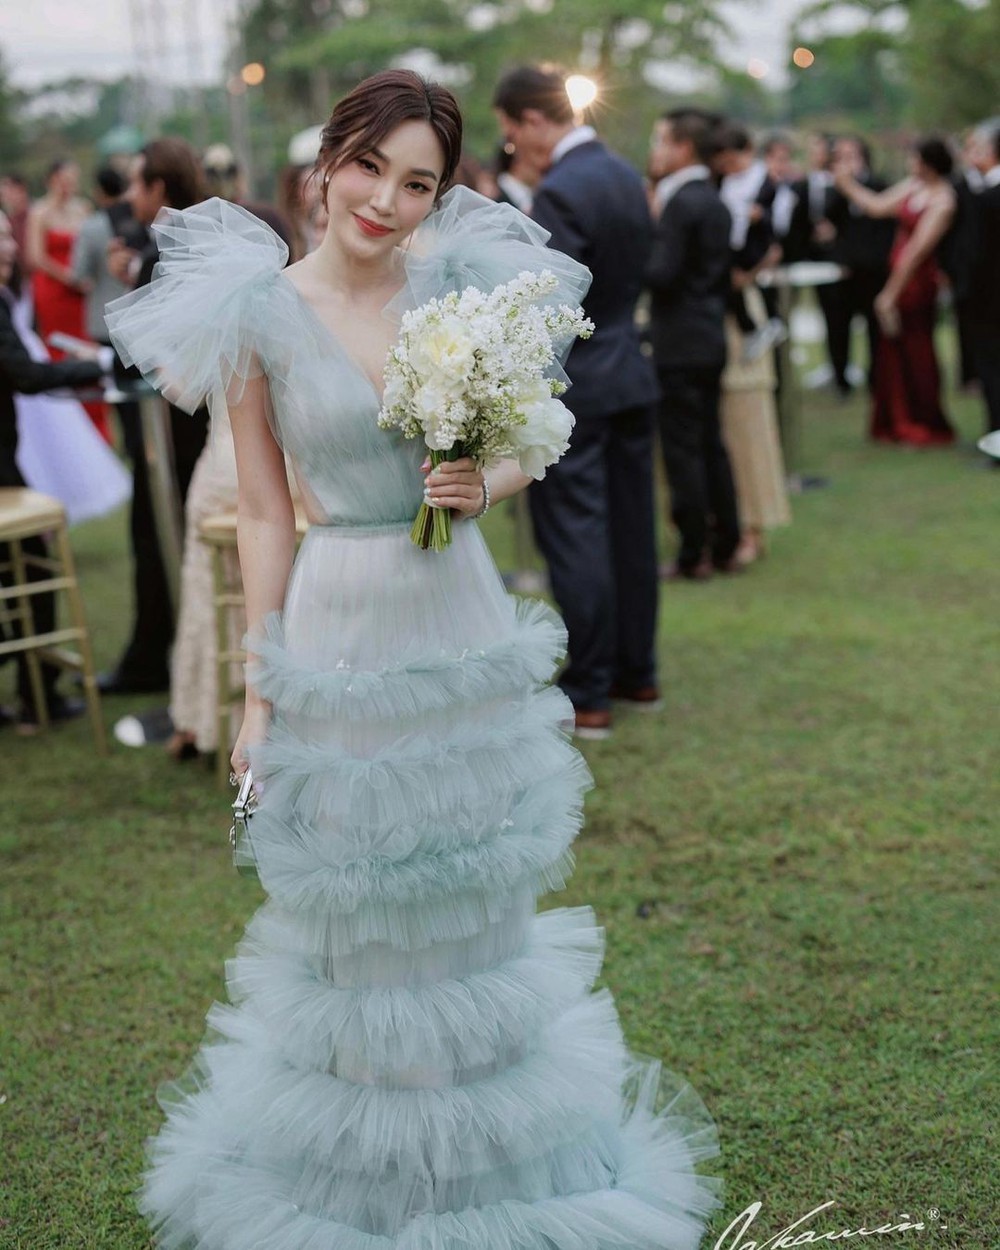 Drama hi hữu ở tiệc cưới Nong Poy: Một nữ diễn viên bị dân tình mỉa mai vì lên đồ “lồng lộn”, lấn át cô dâu - Ảnh 2.